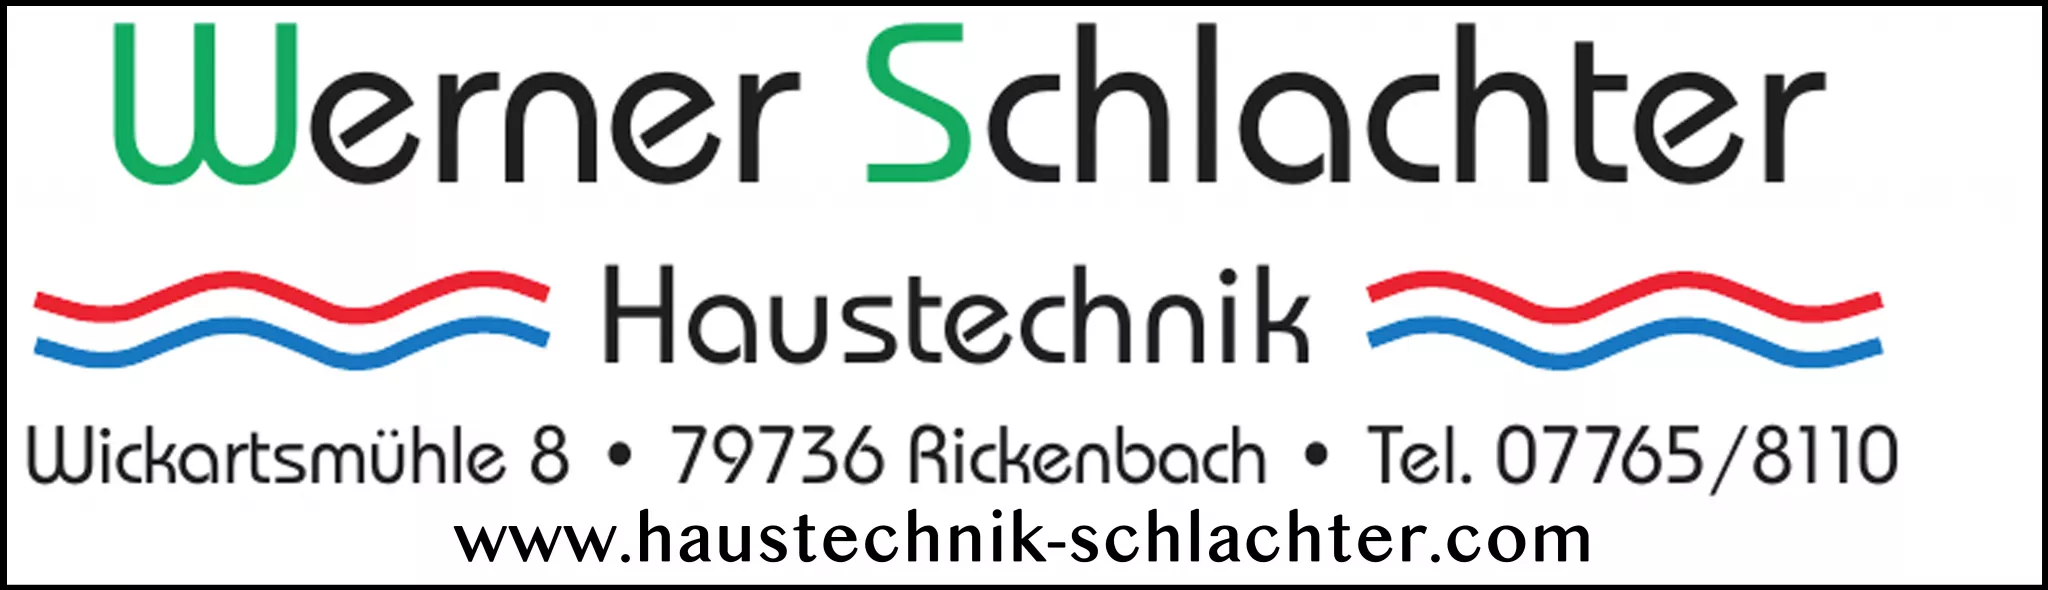 Werner Schlachter - Haustechnik